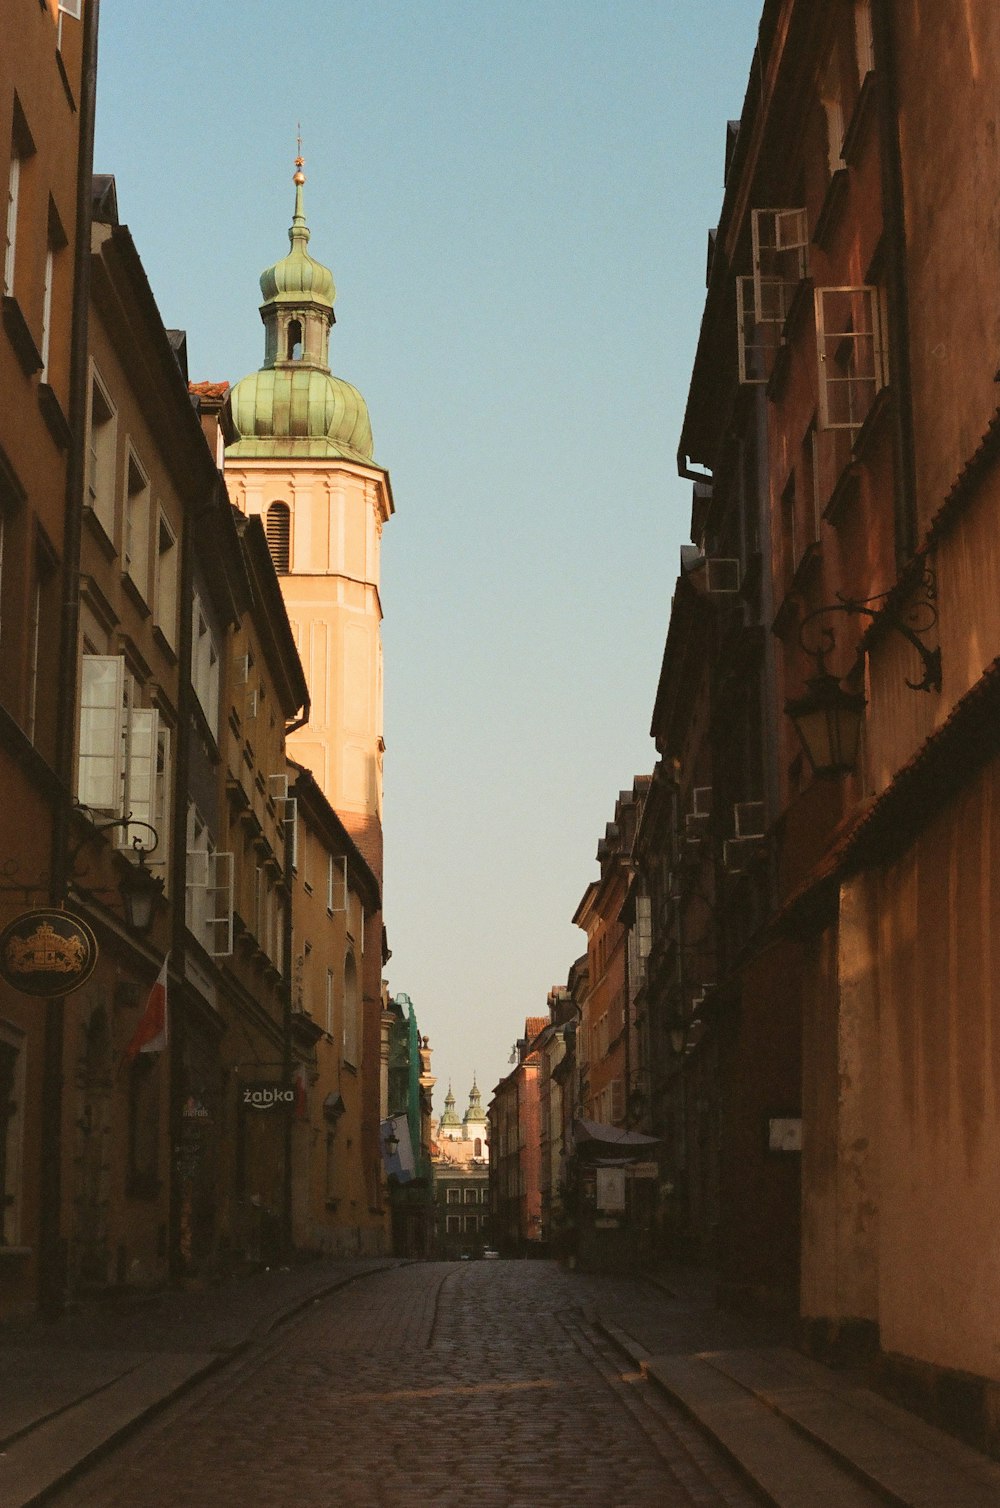 uma rua estreita da cidade com uma torre do relógio ao fundo